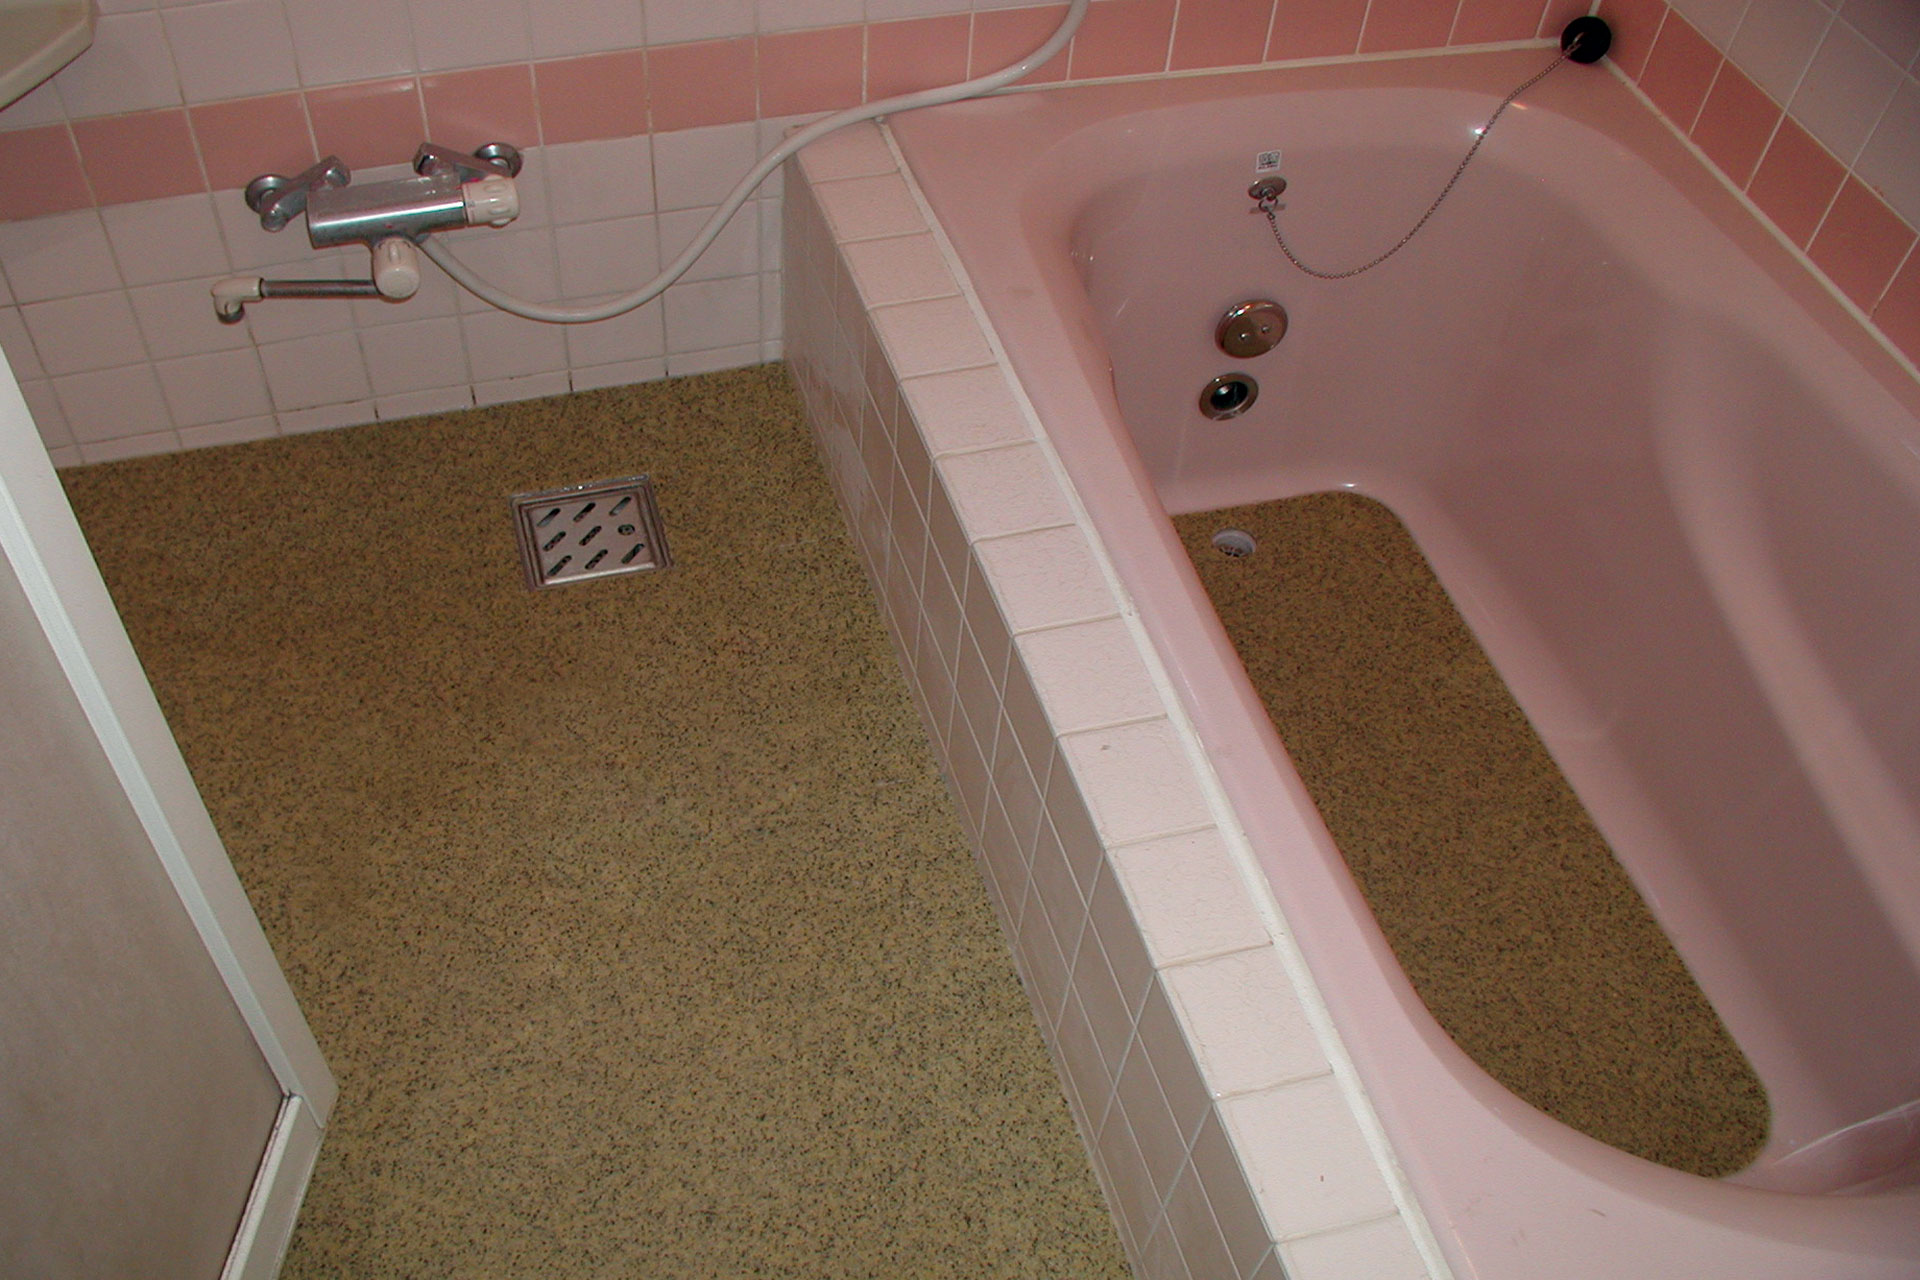 タイル床+FRP浴槽をハイブリッドストーン アベイラス スーパー浴室床材イエロー色で改修した後の様子